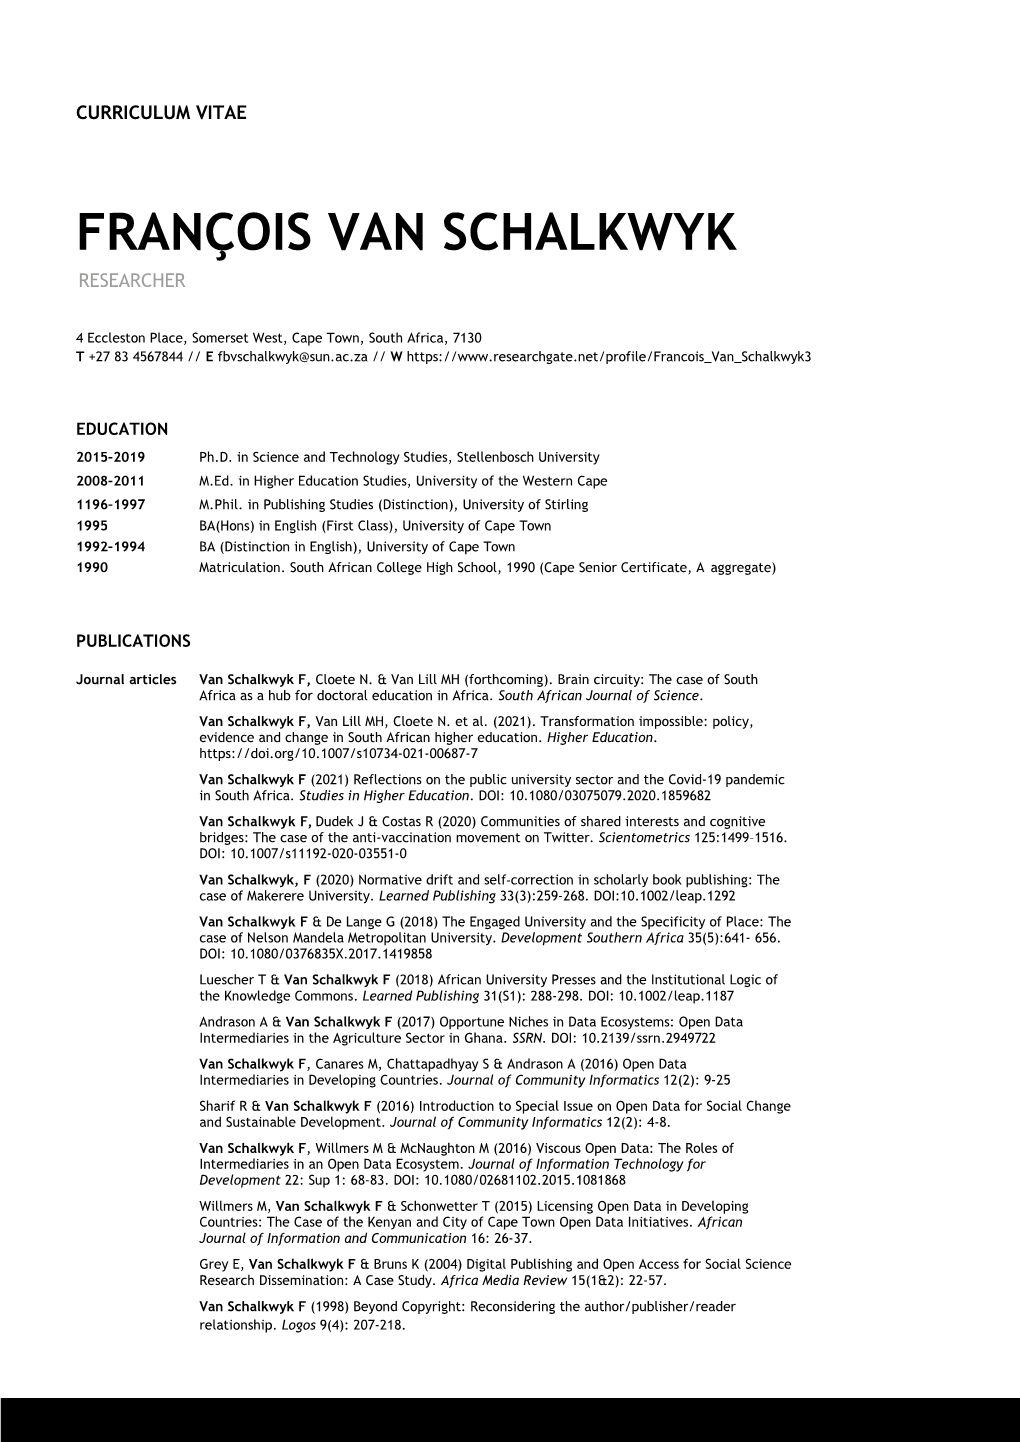 François Van Schalkwyk Researcher